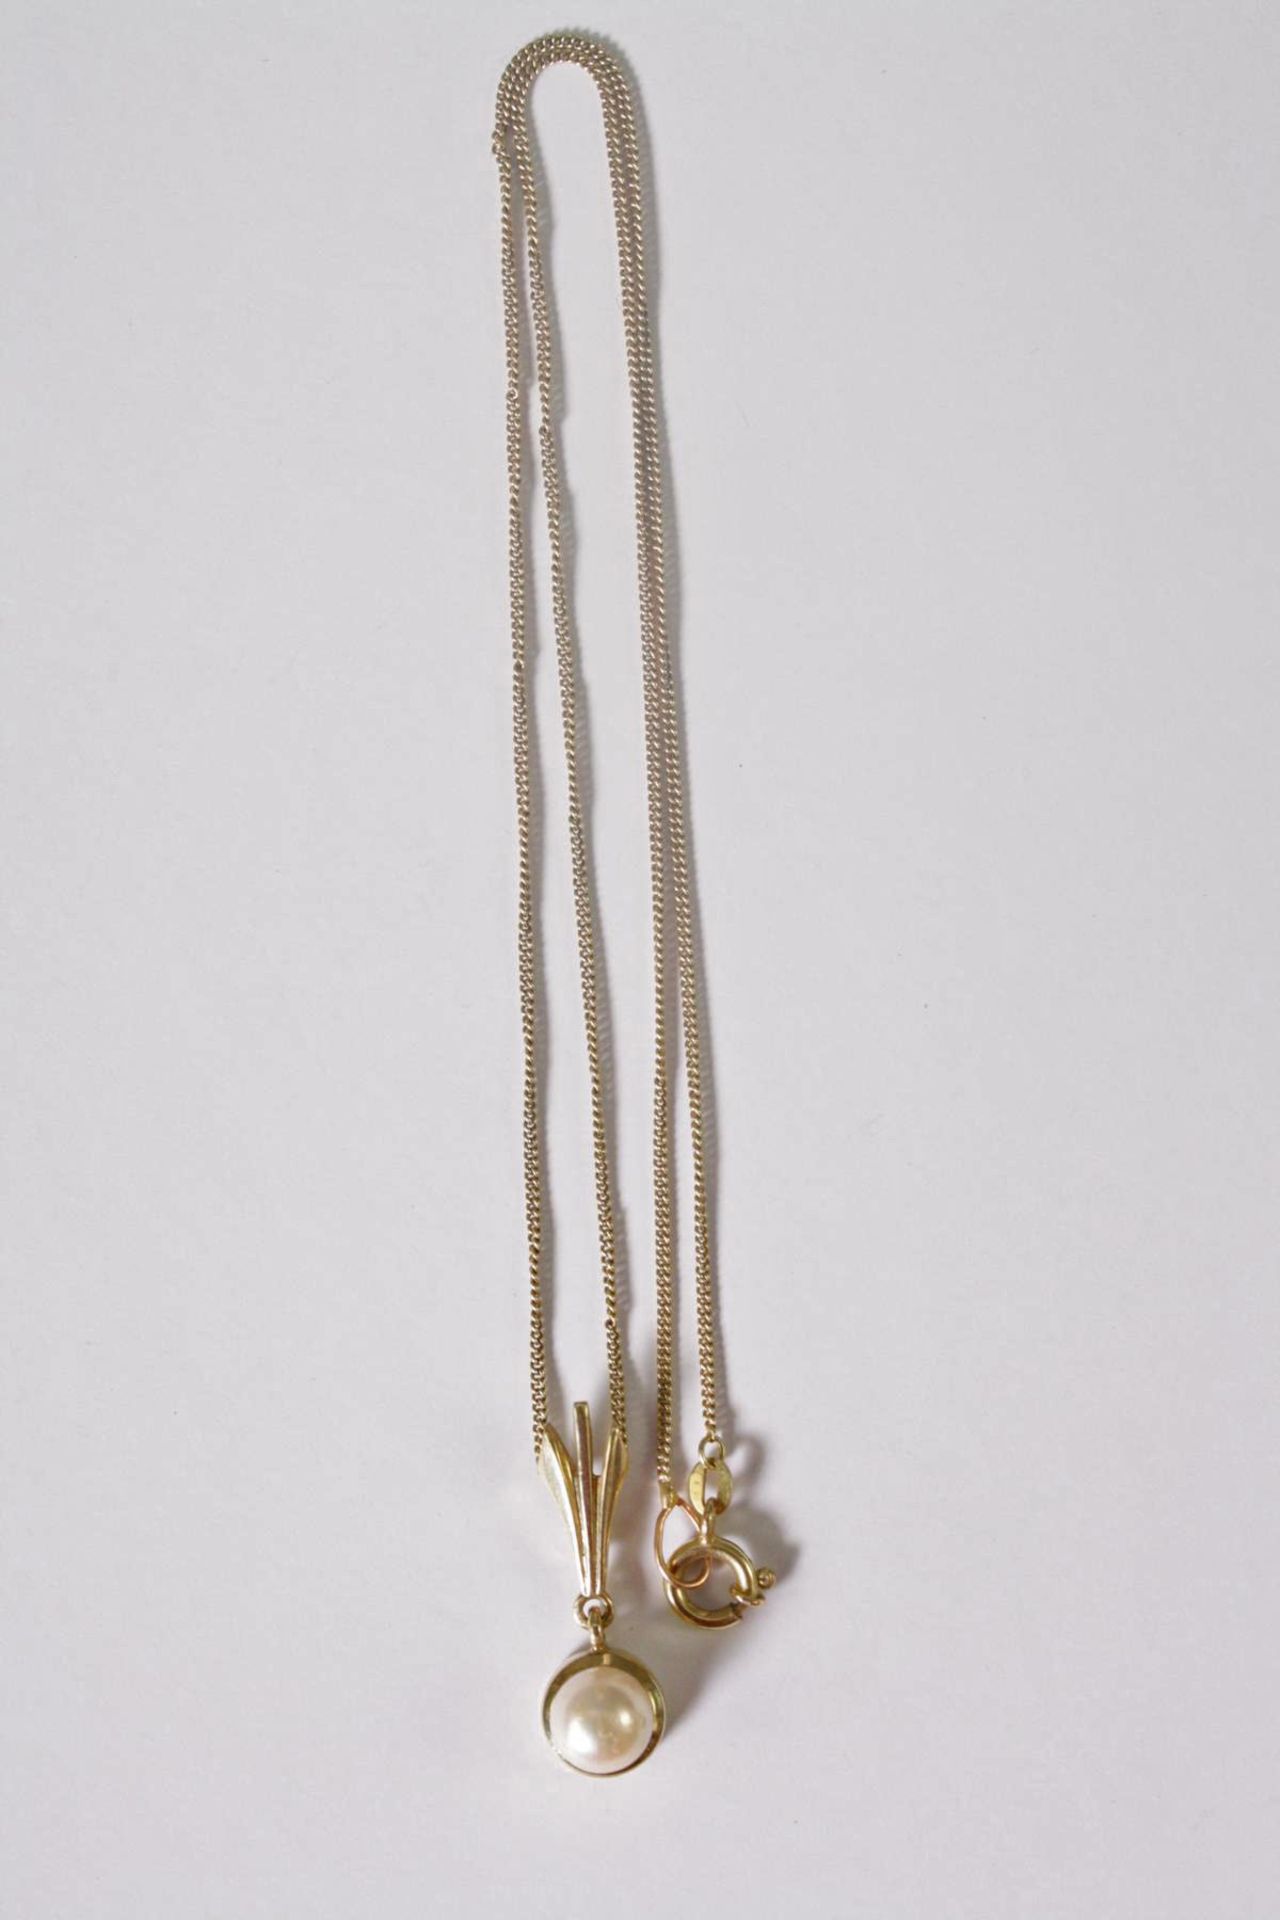 Halskette mit Perlanhänger, 14 Karat Gelbgold - Bild 2 aus 2